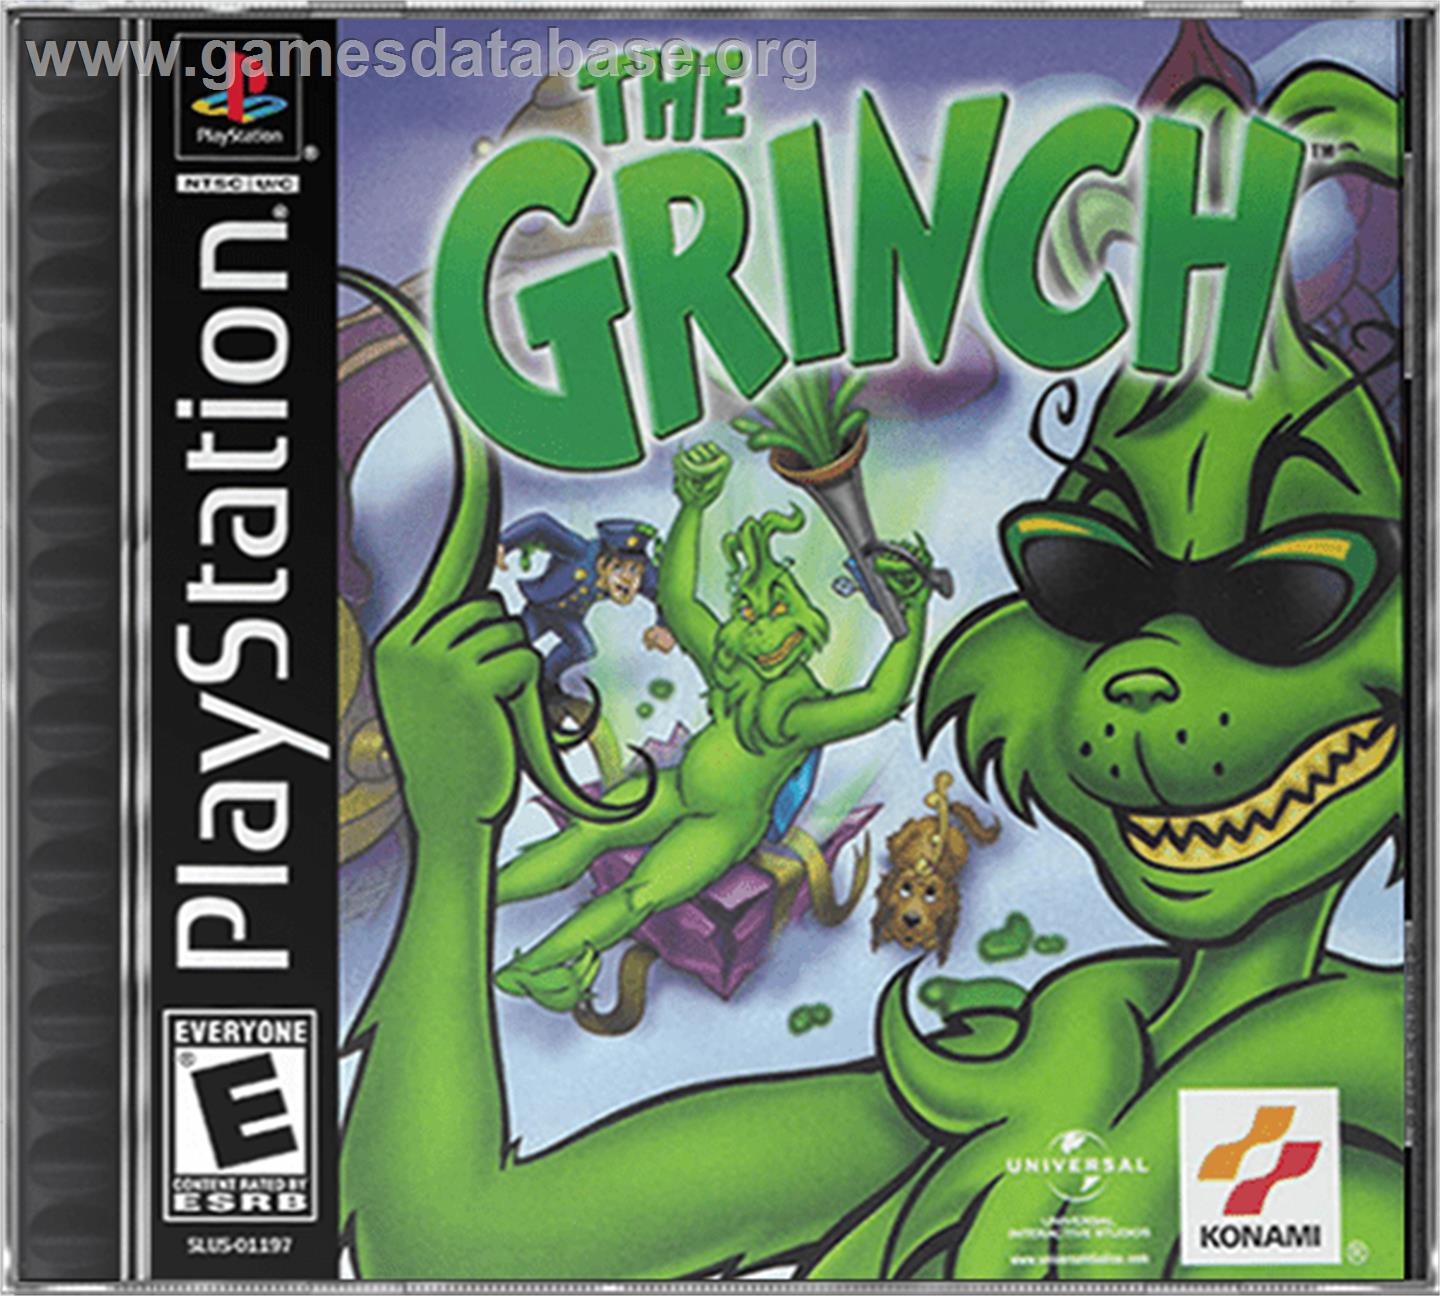 The Grinch - Sony Playstation - Artwork - Box